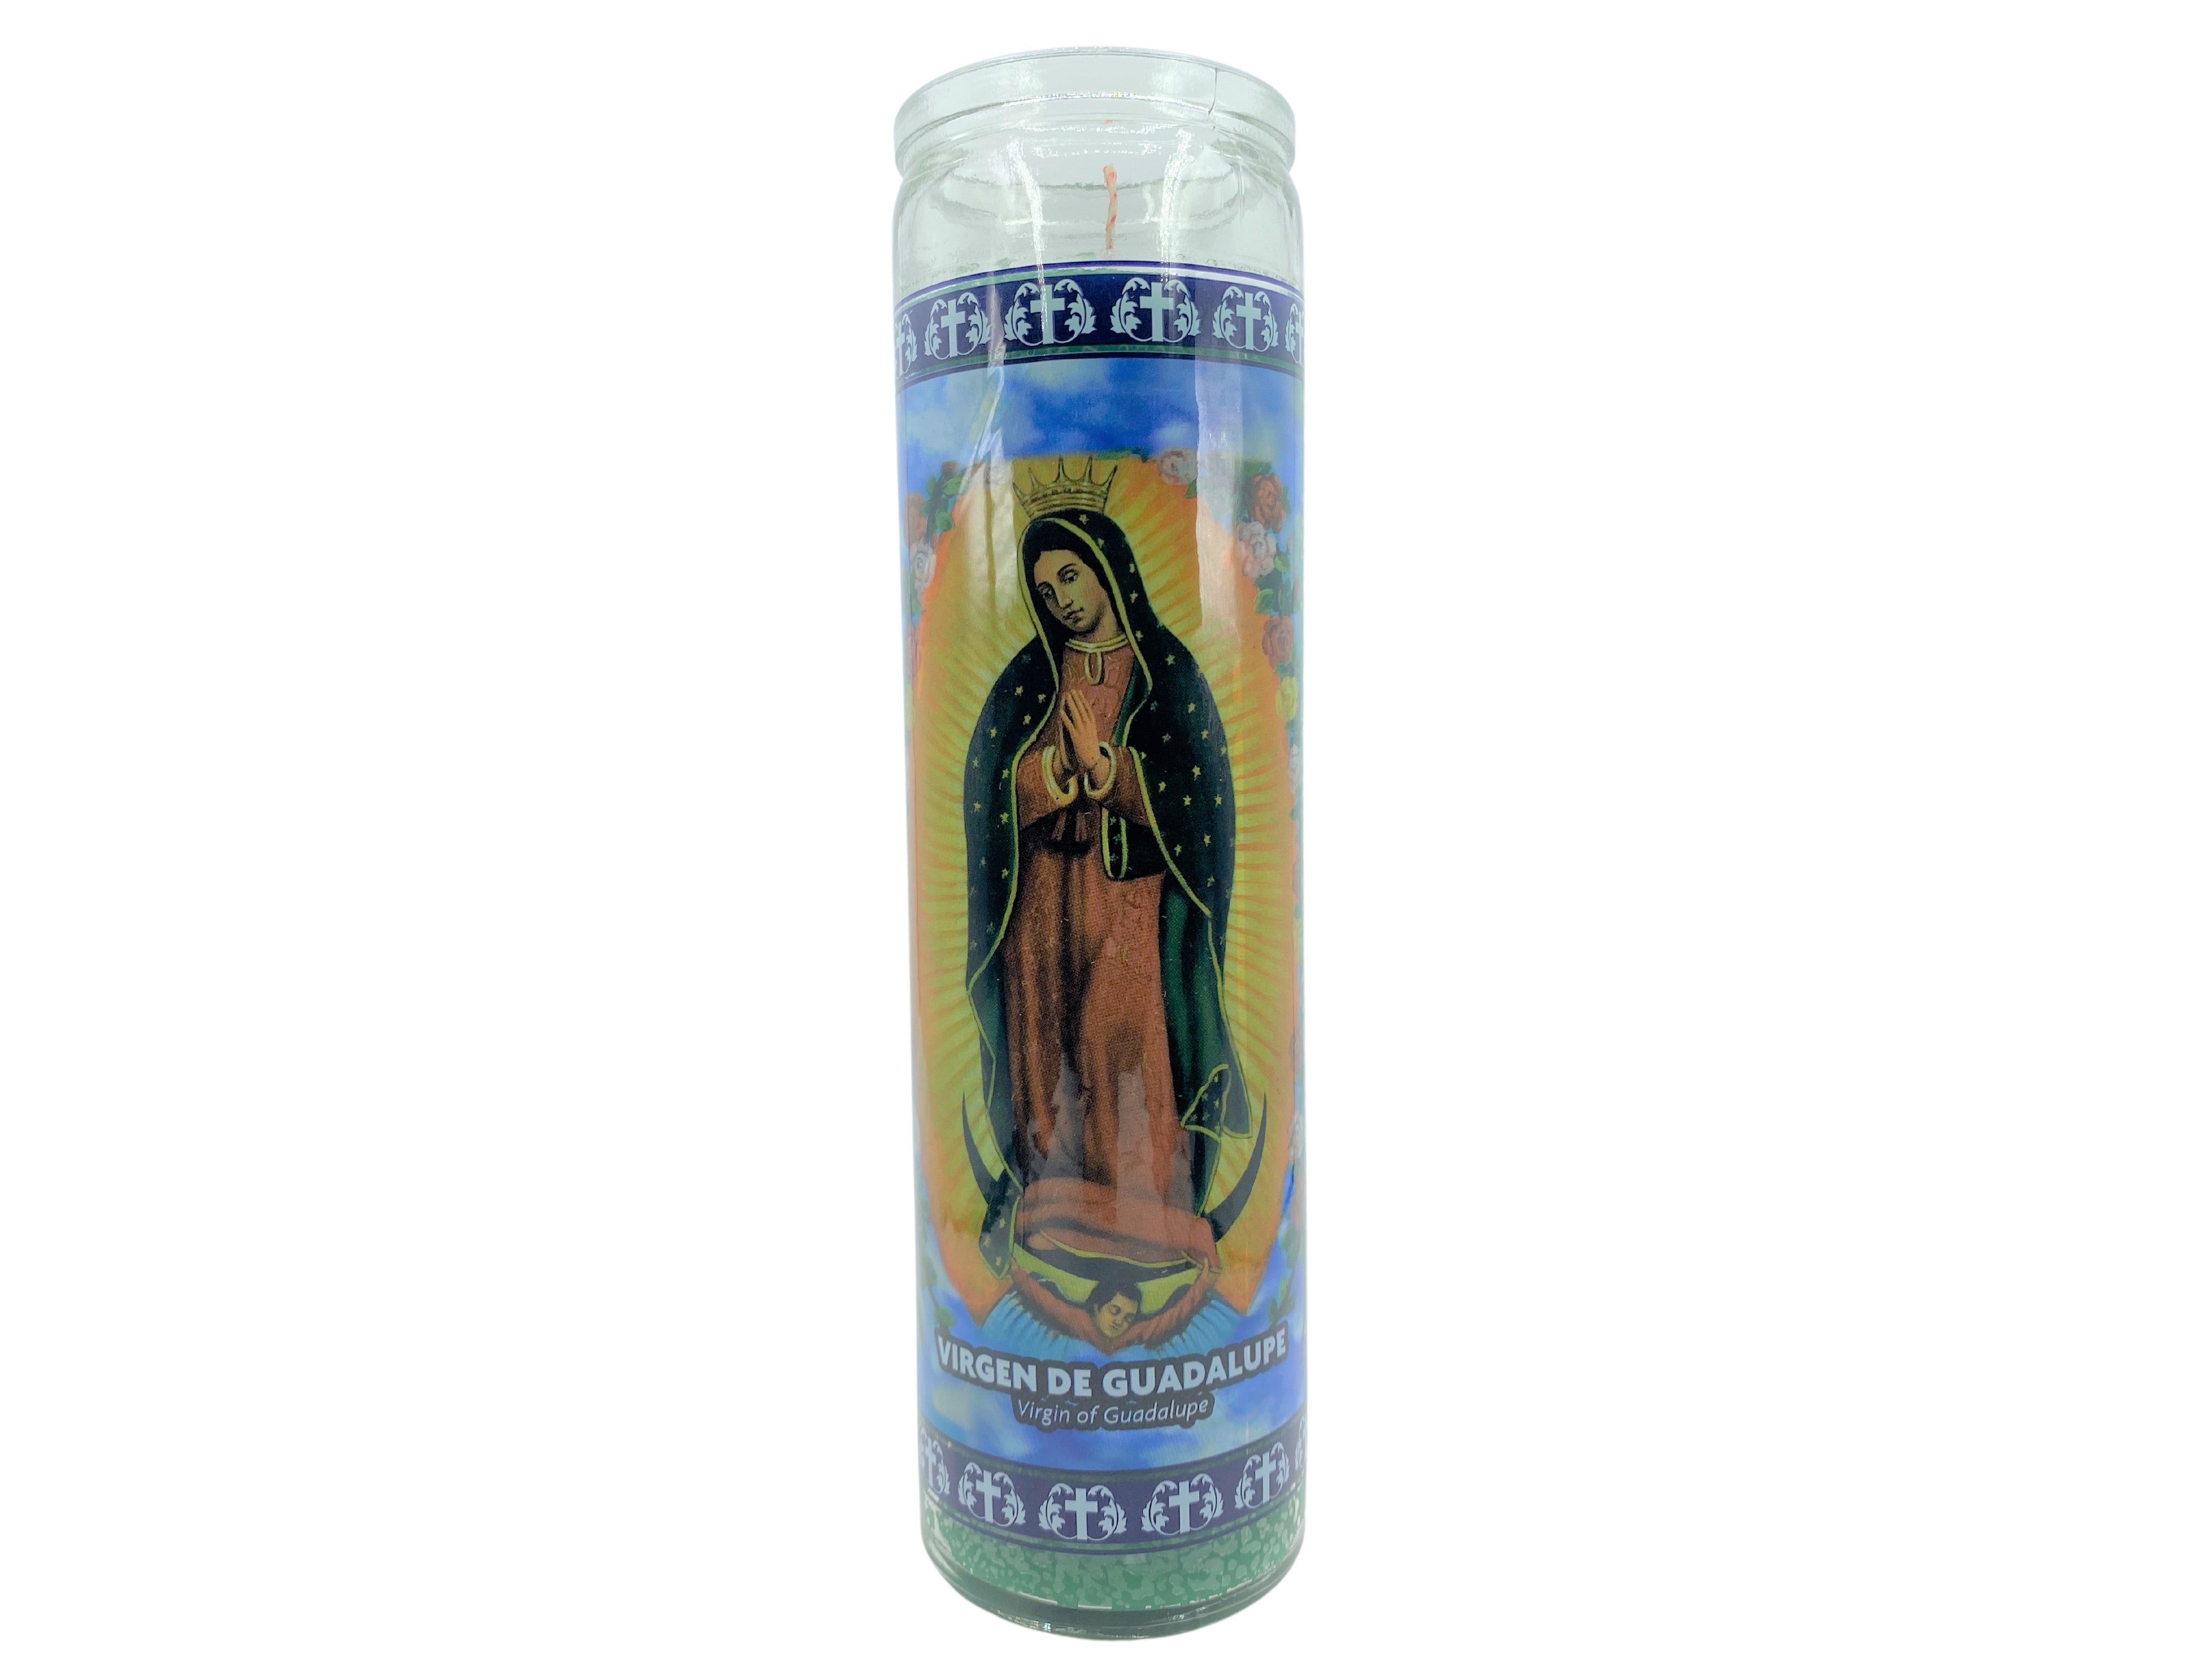 Candles of Our Lady of Guadalupe / Velas de La Virgen de Guadalupe